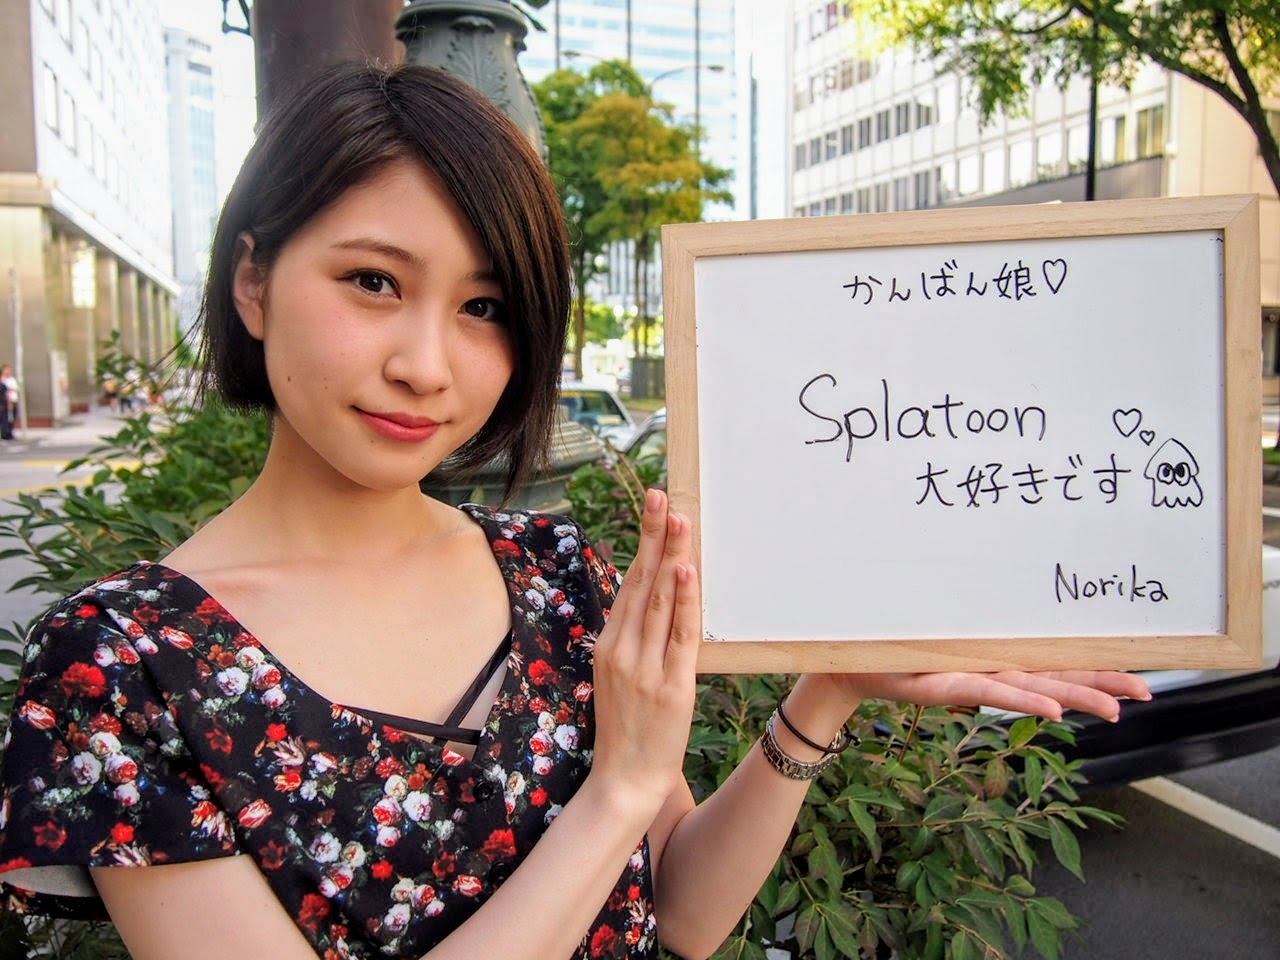 Norikaさん / Splatoon